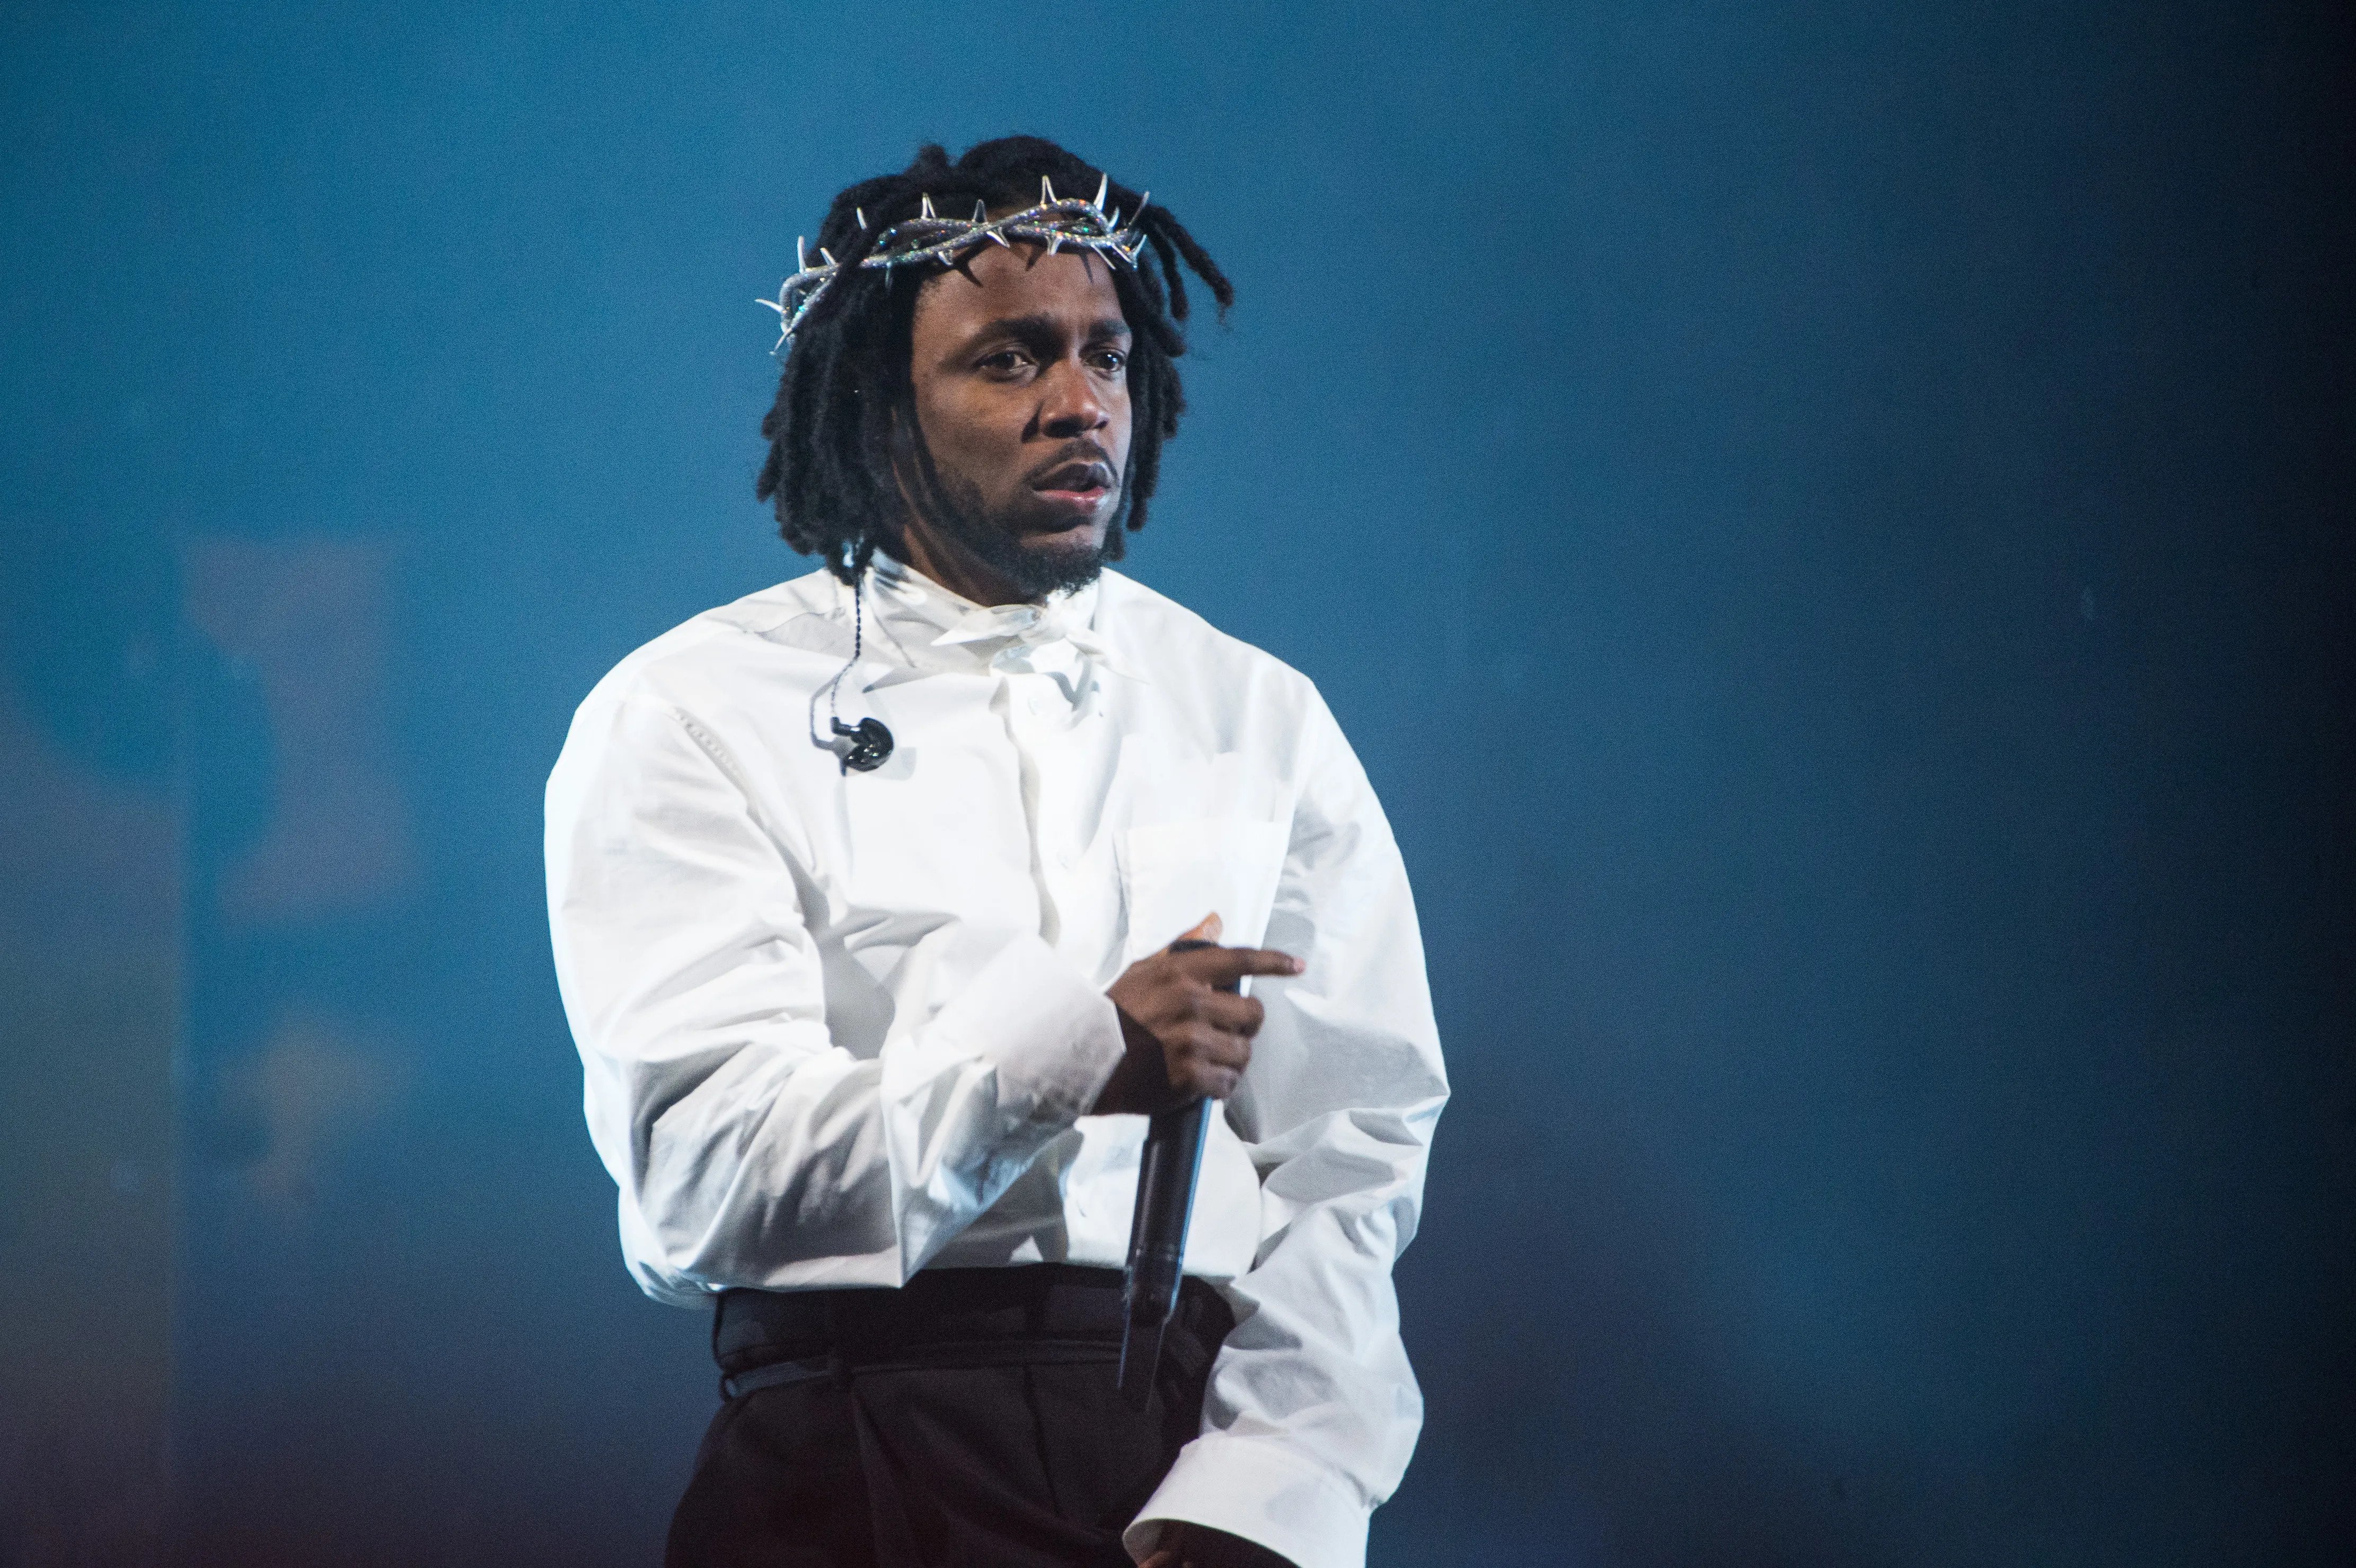 Kendrick Lamar en concert à Paris : date et ouverture de la billetterie